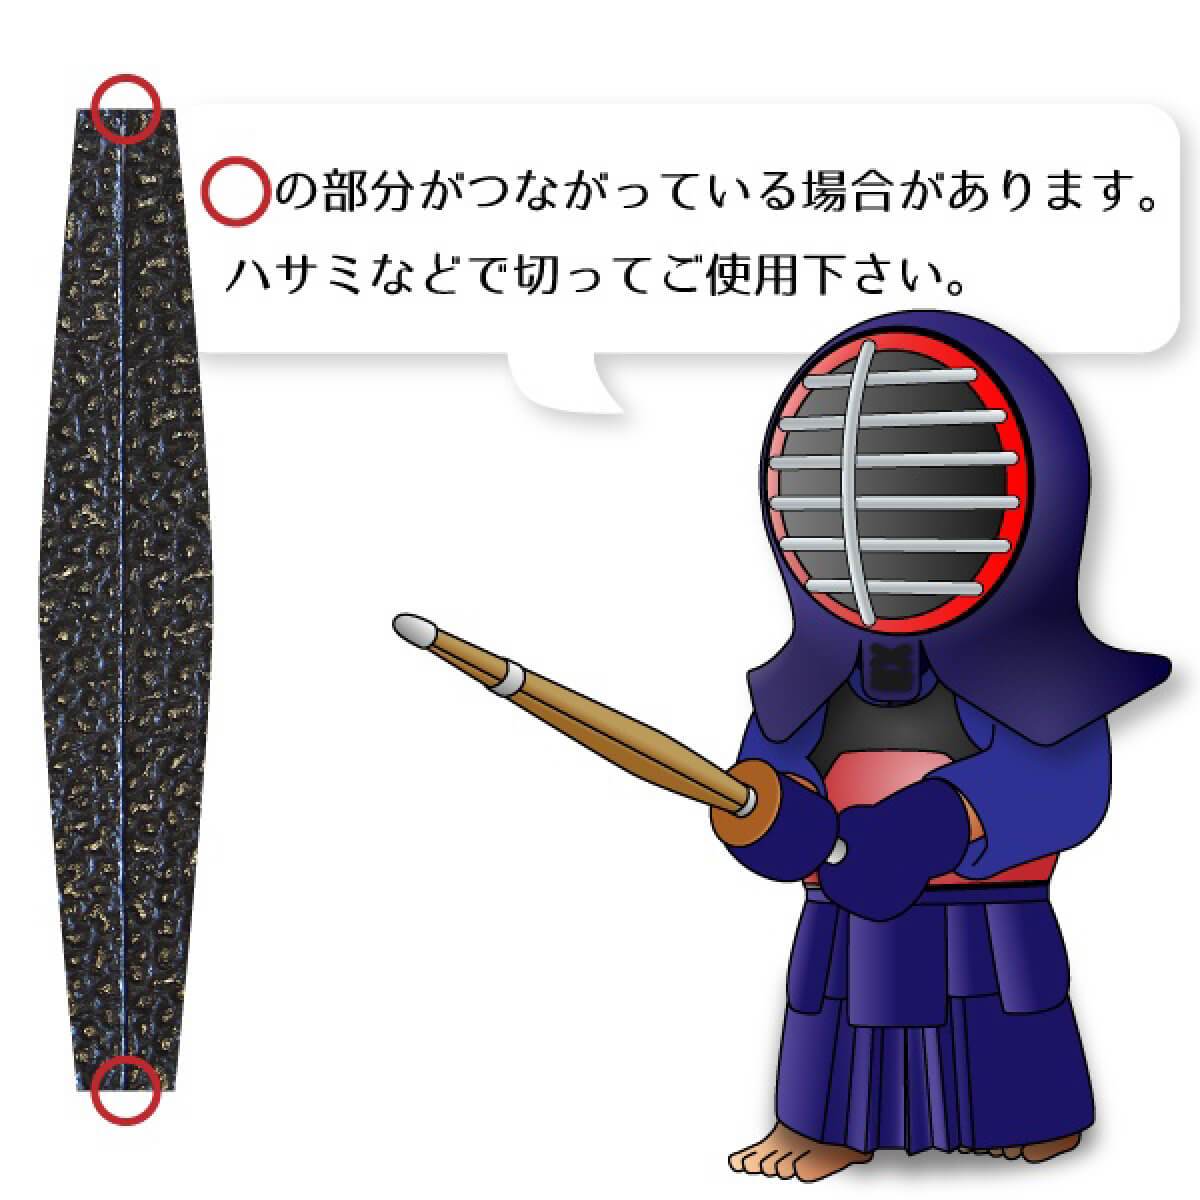 胴横乳革 4本組 平 長さ約19.5cm – 西日本武道具